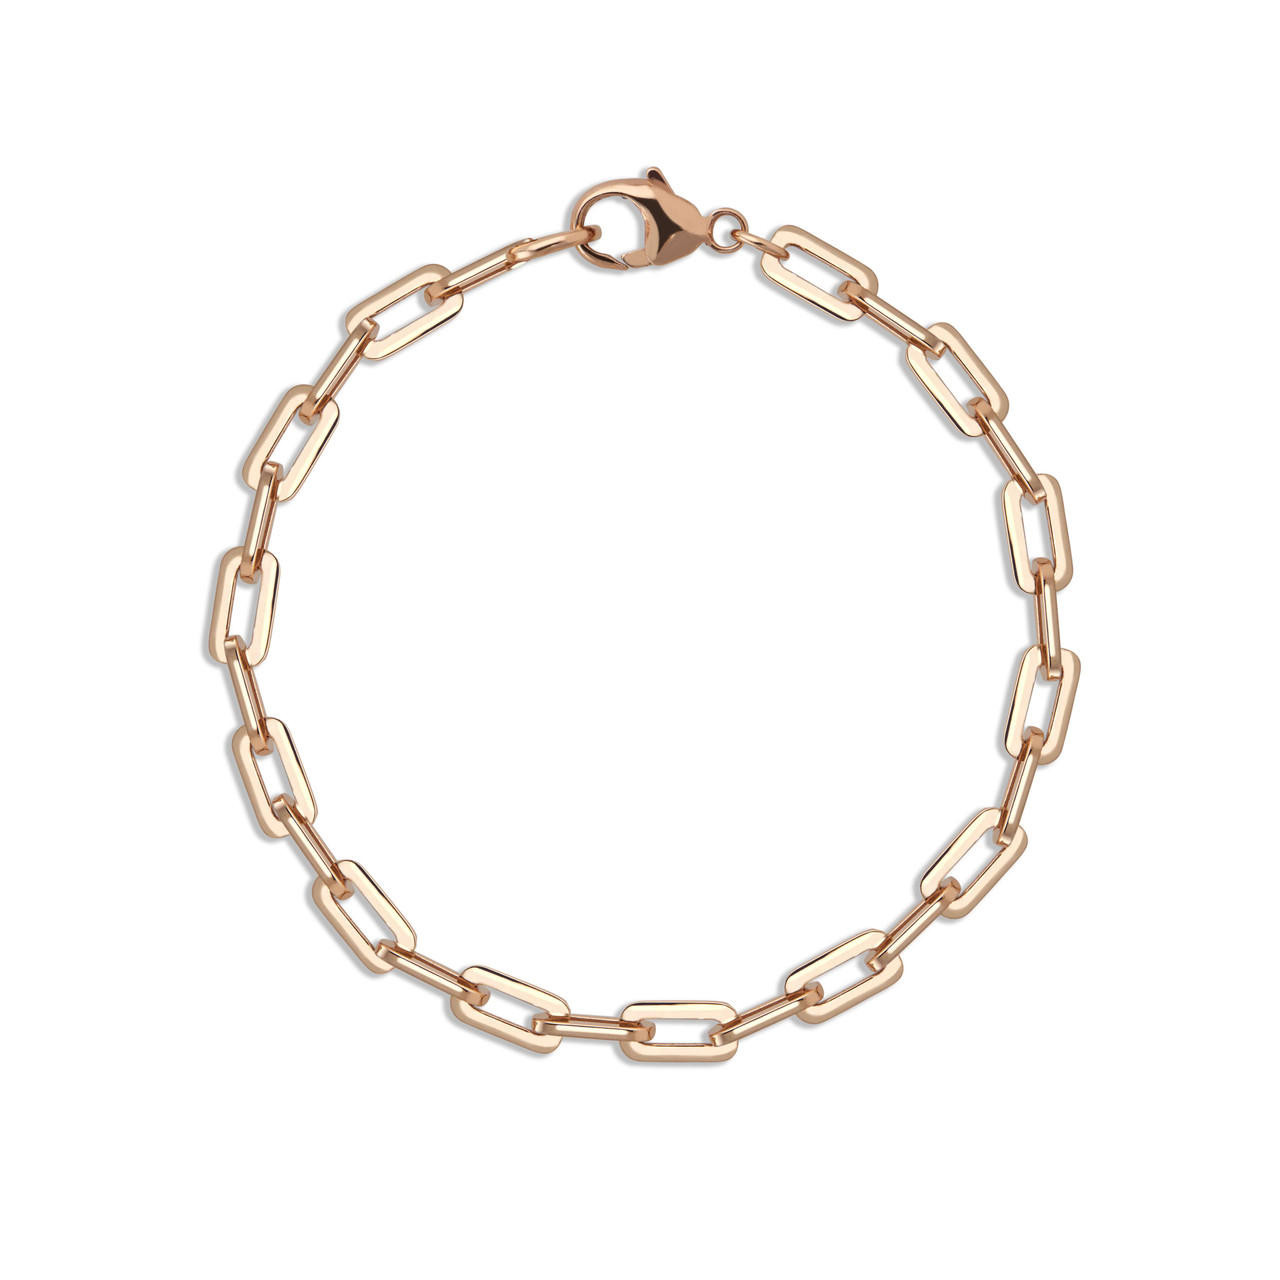 Our Top Cartier Love Bracelet Alternatives - Lindsey Scoggins Studio